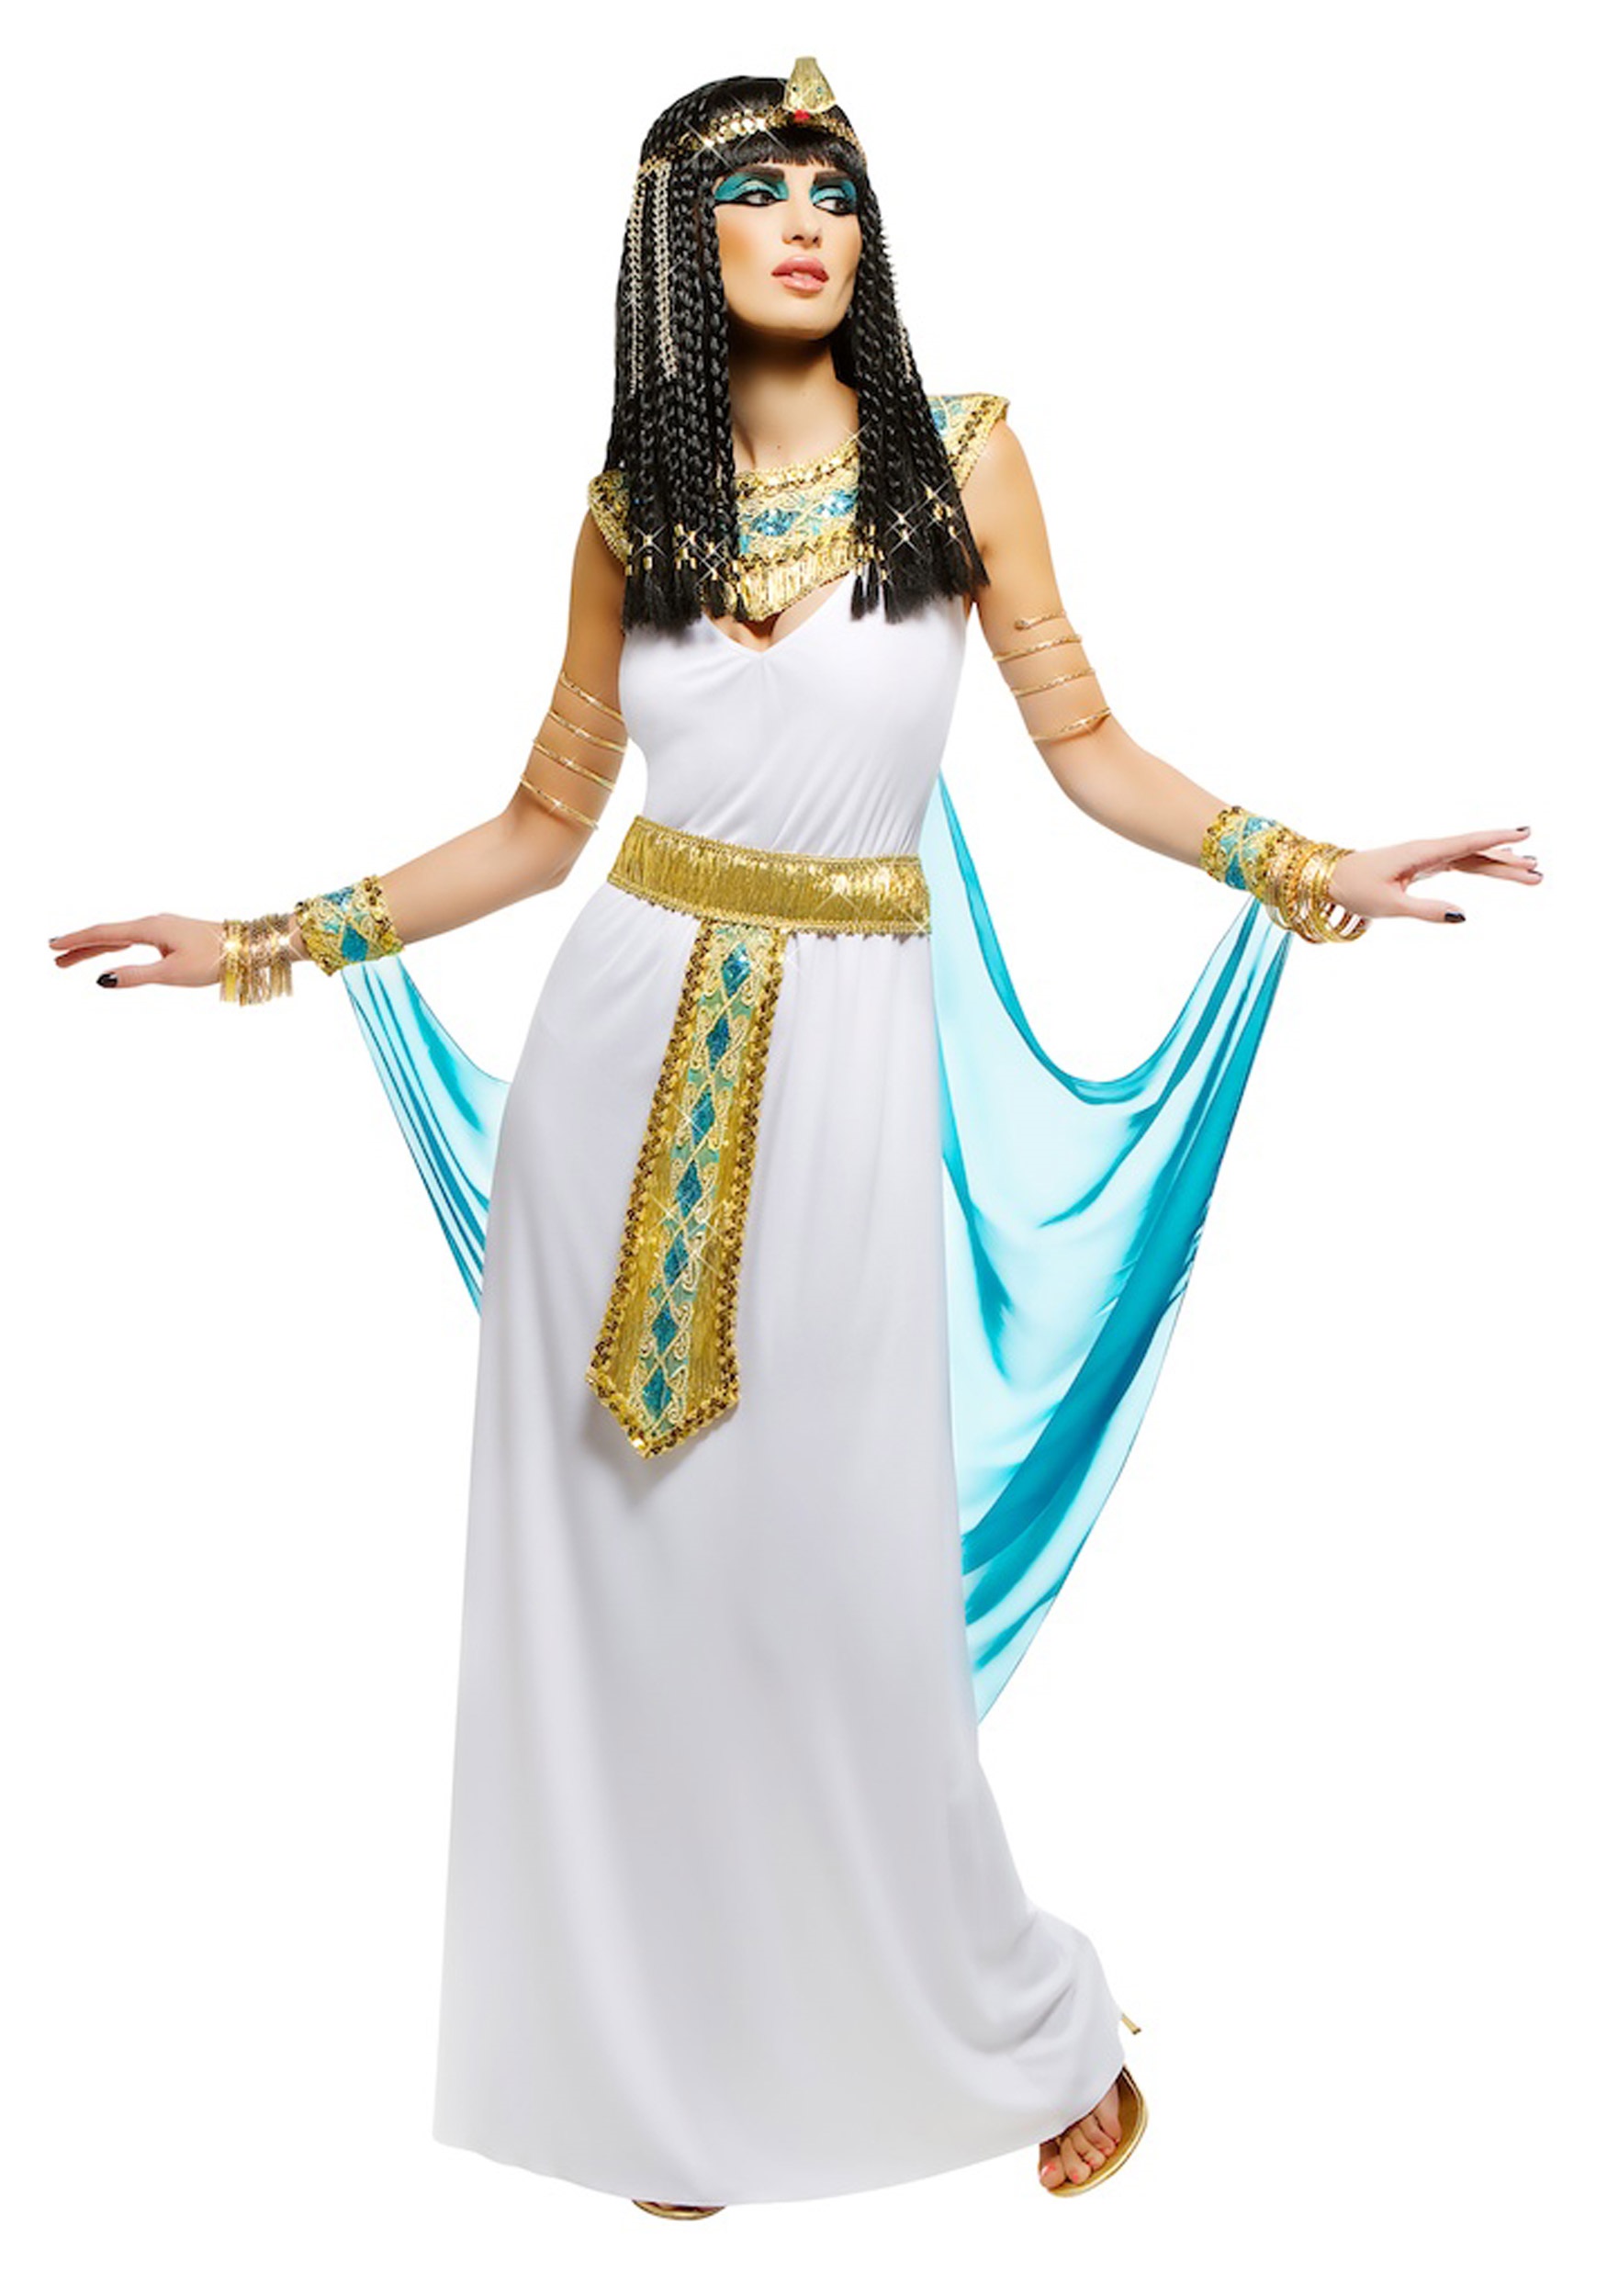 Queen Cleopatra Costume for Women